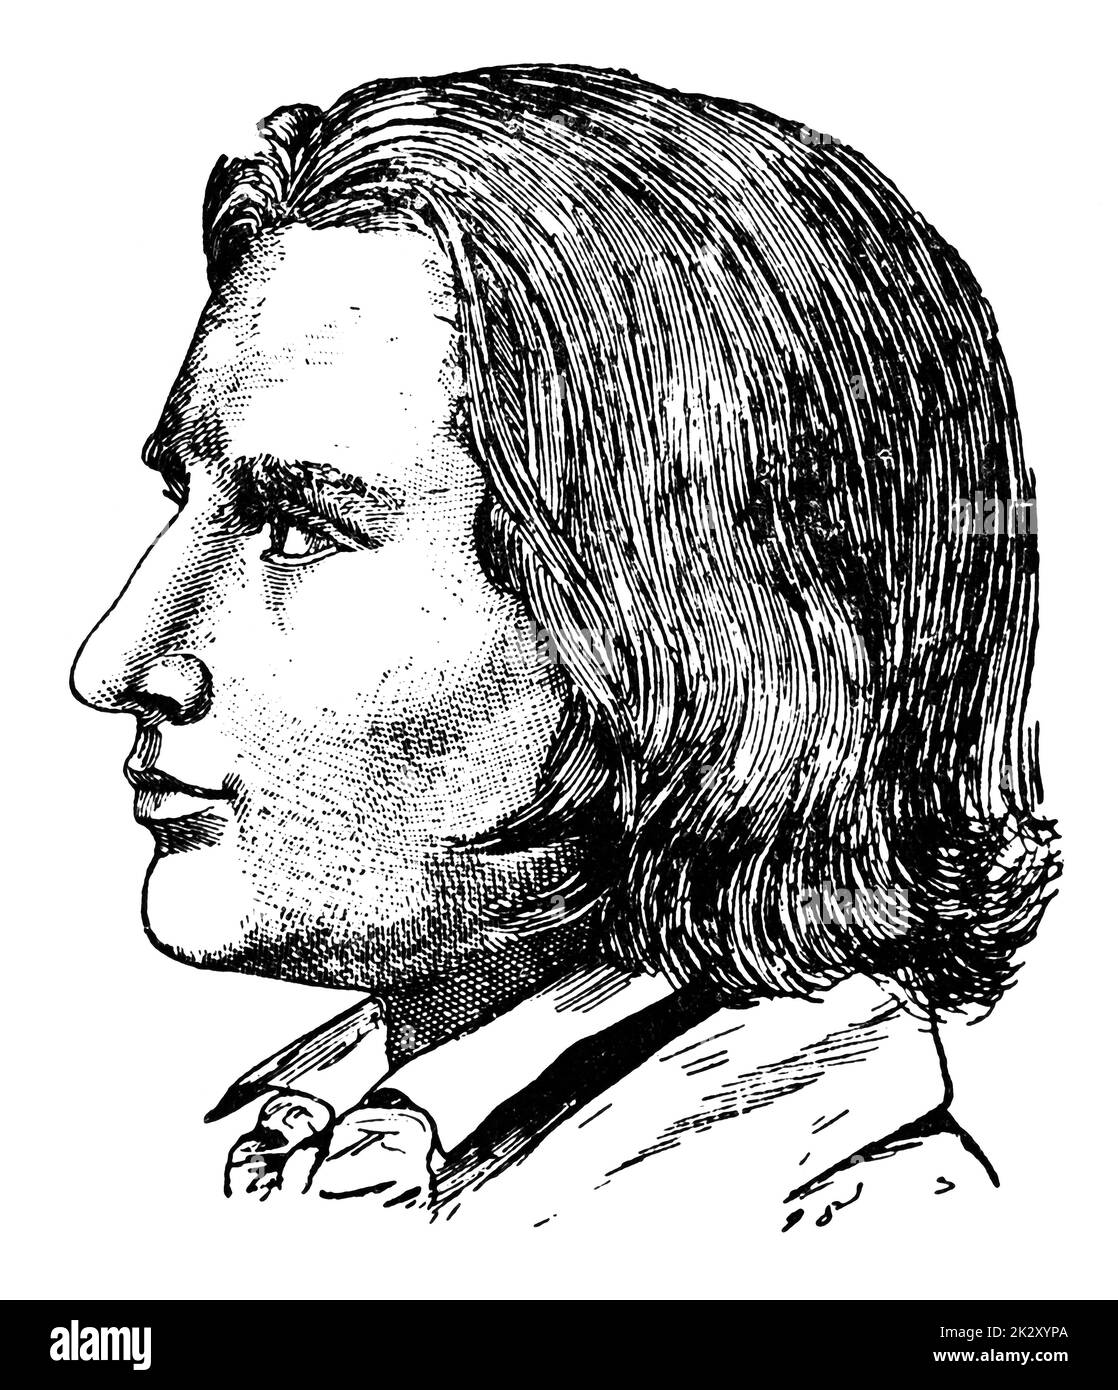 Portrait von Franz Liszt (25 Jahre alt) - ein ungarischer Komponist, virtuoser Pianist, Dirigent, Musiklehrer, Arrangeur und Organist der Romantik. Illustration des 19. Jahrhunderts. Weißer Hintergrund. Stockfoto